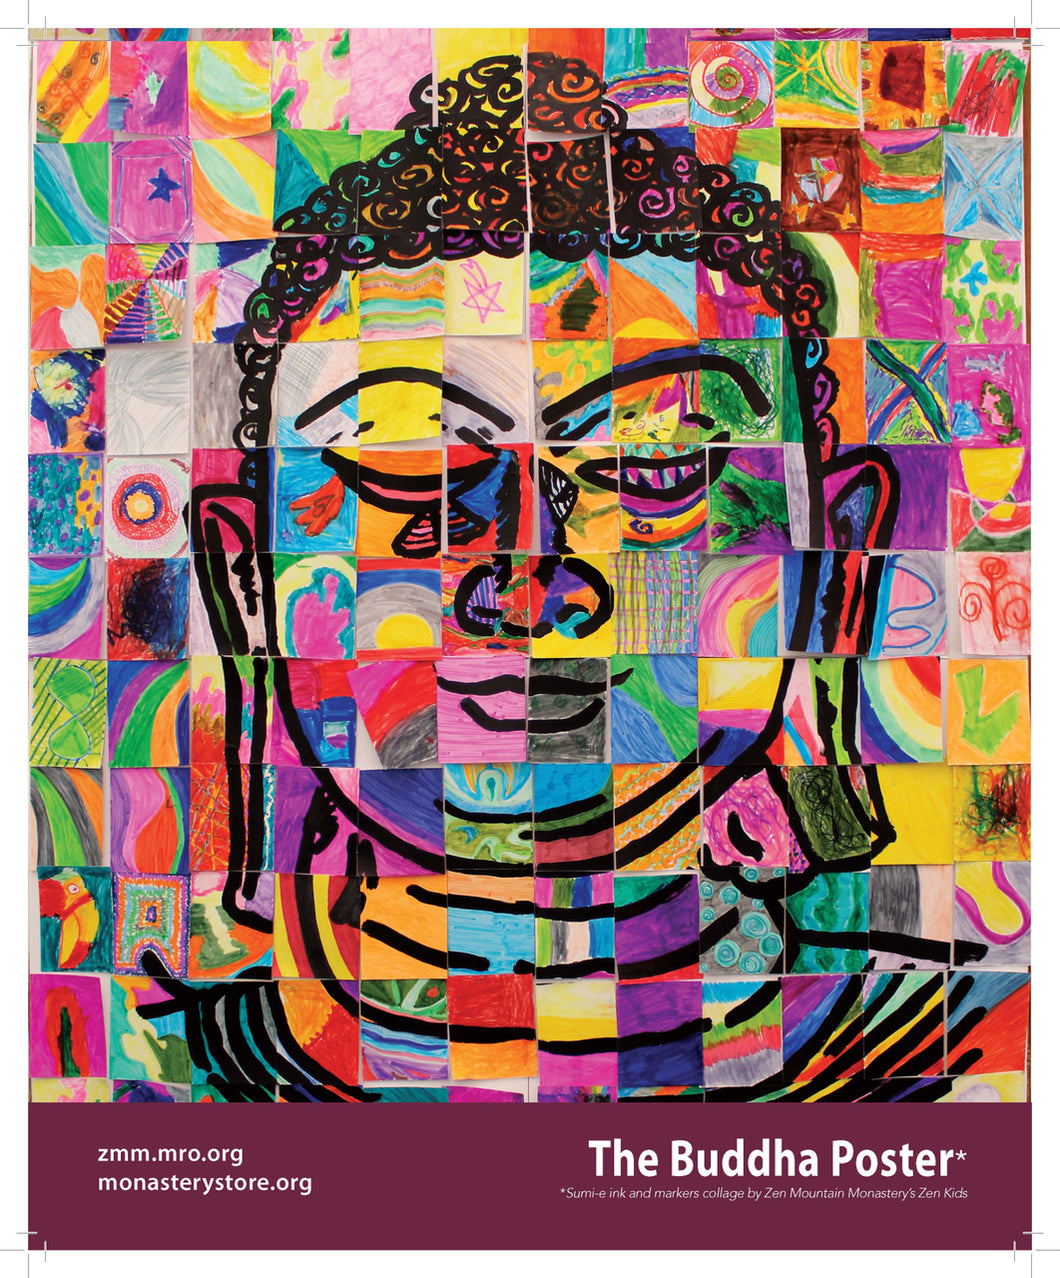 Mosaic Buddha Poster - Monastery The Store